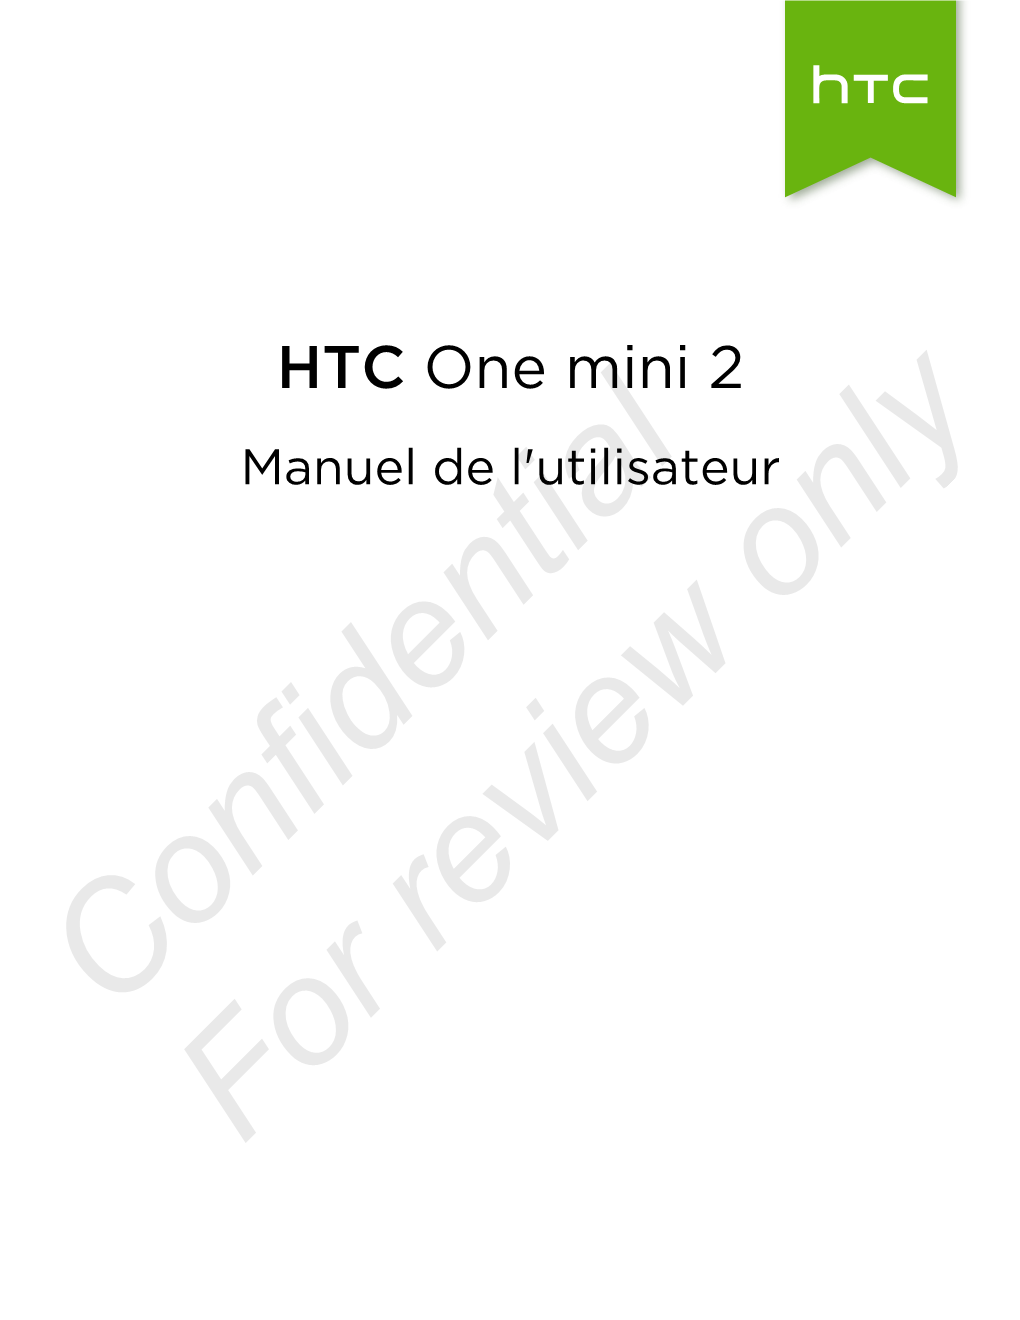 HTC One Mini 2 Manuel De L'utilisateur Only